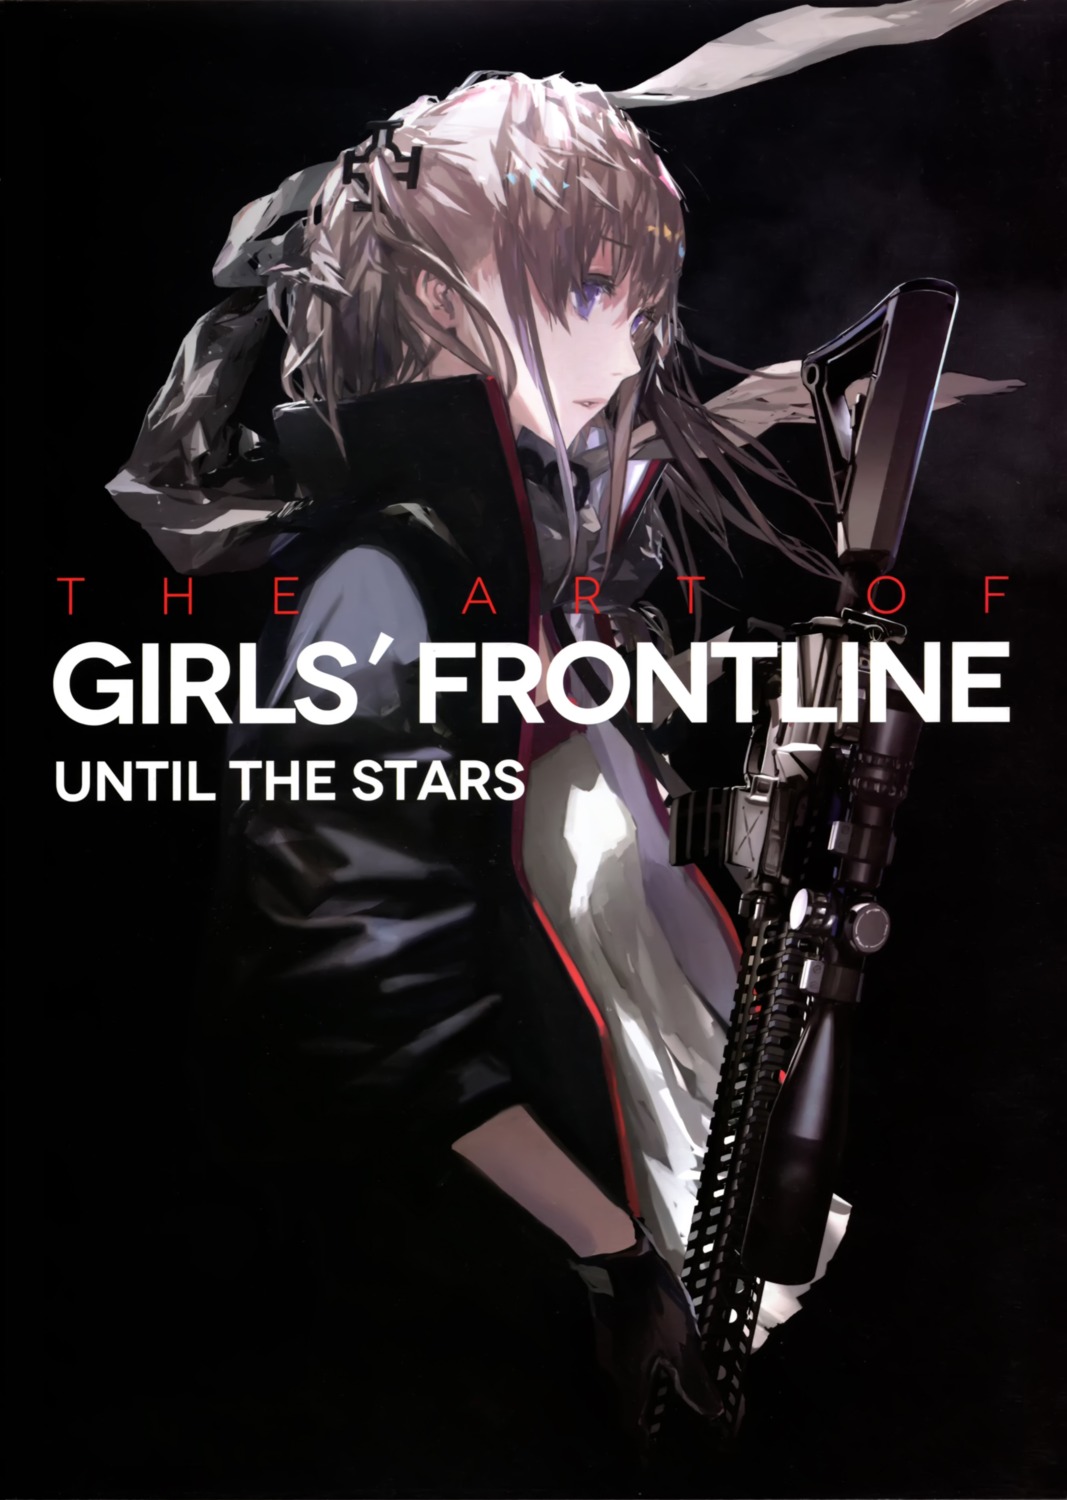 girls_frontline gun lin+ st_ar-15_(girls_frontline)